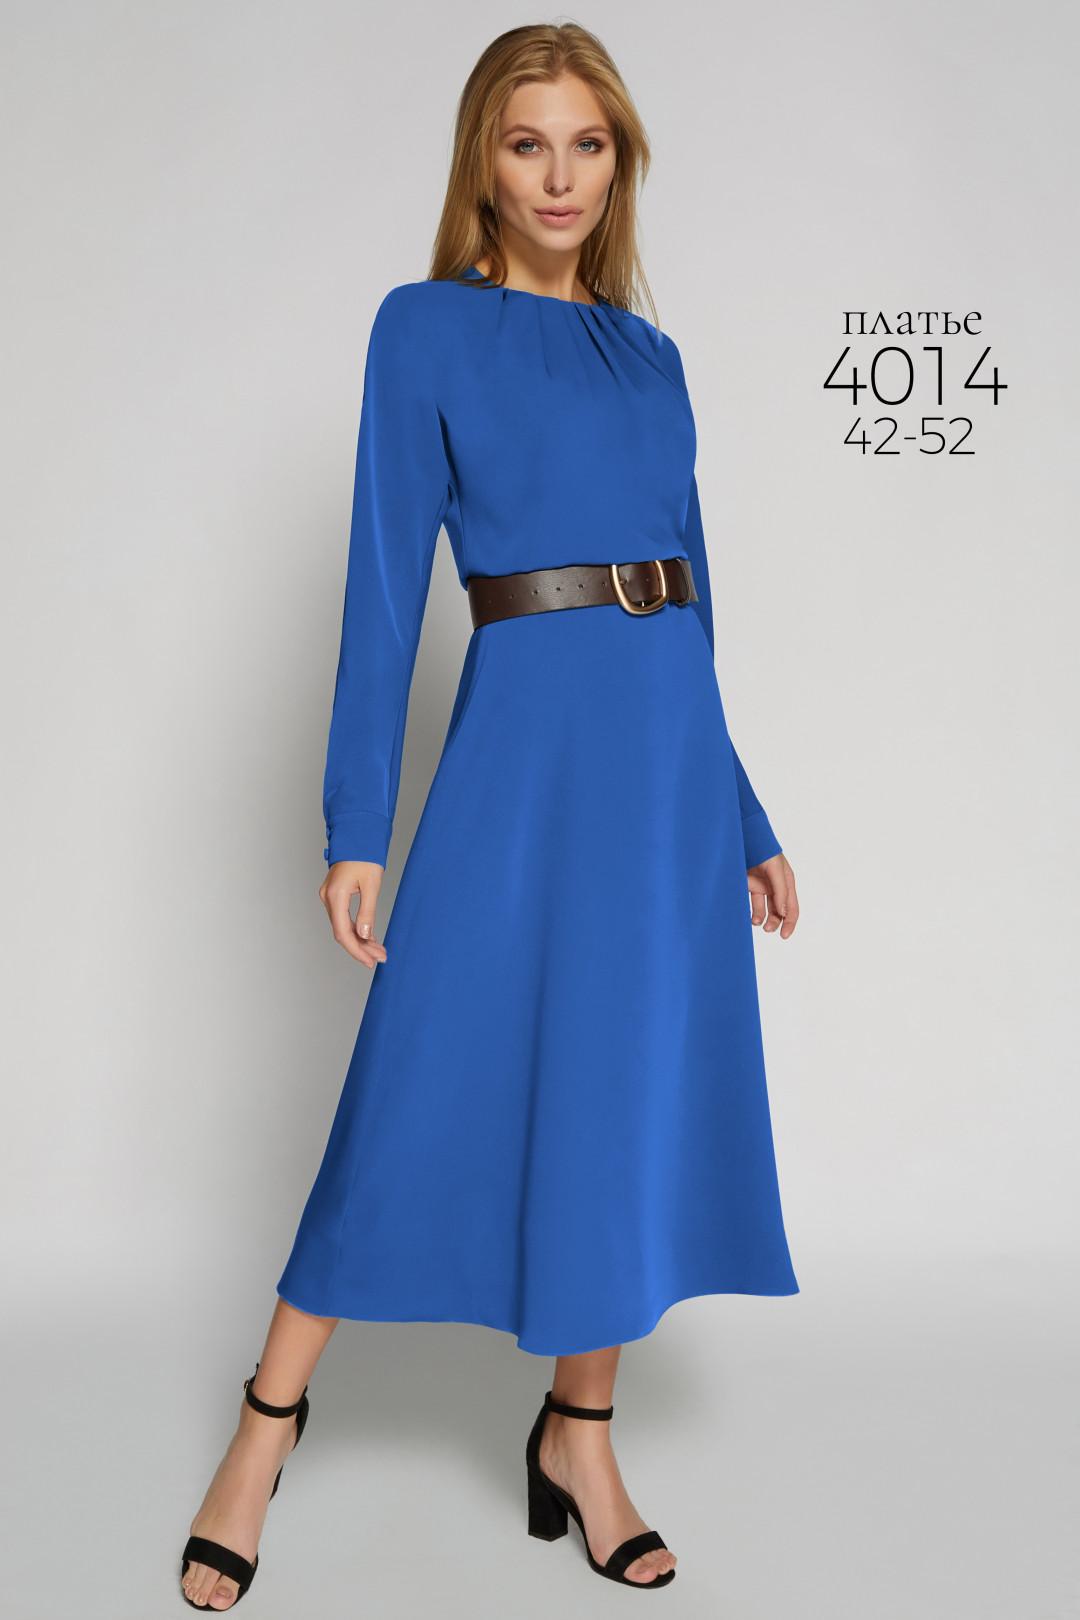 Платье Bazalini 4014 синий